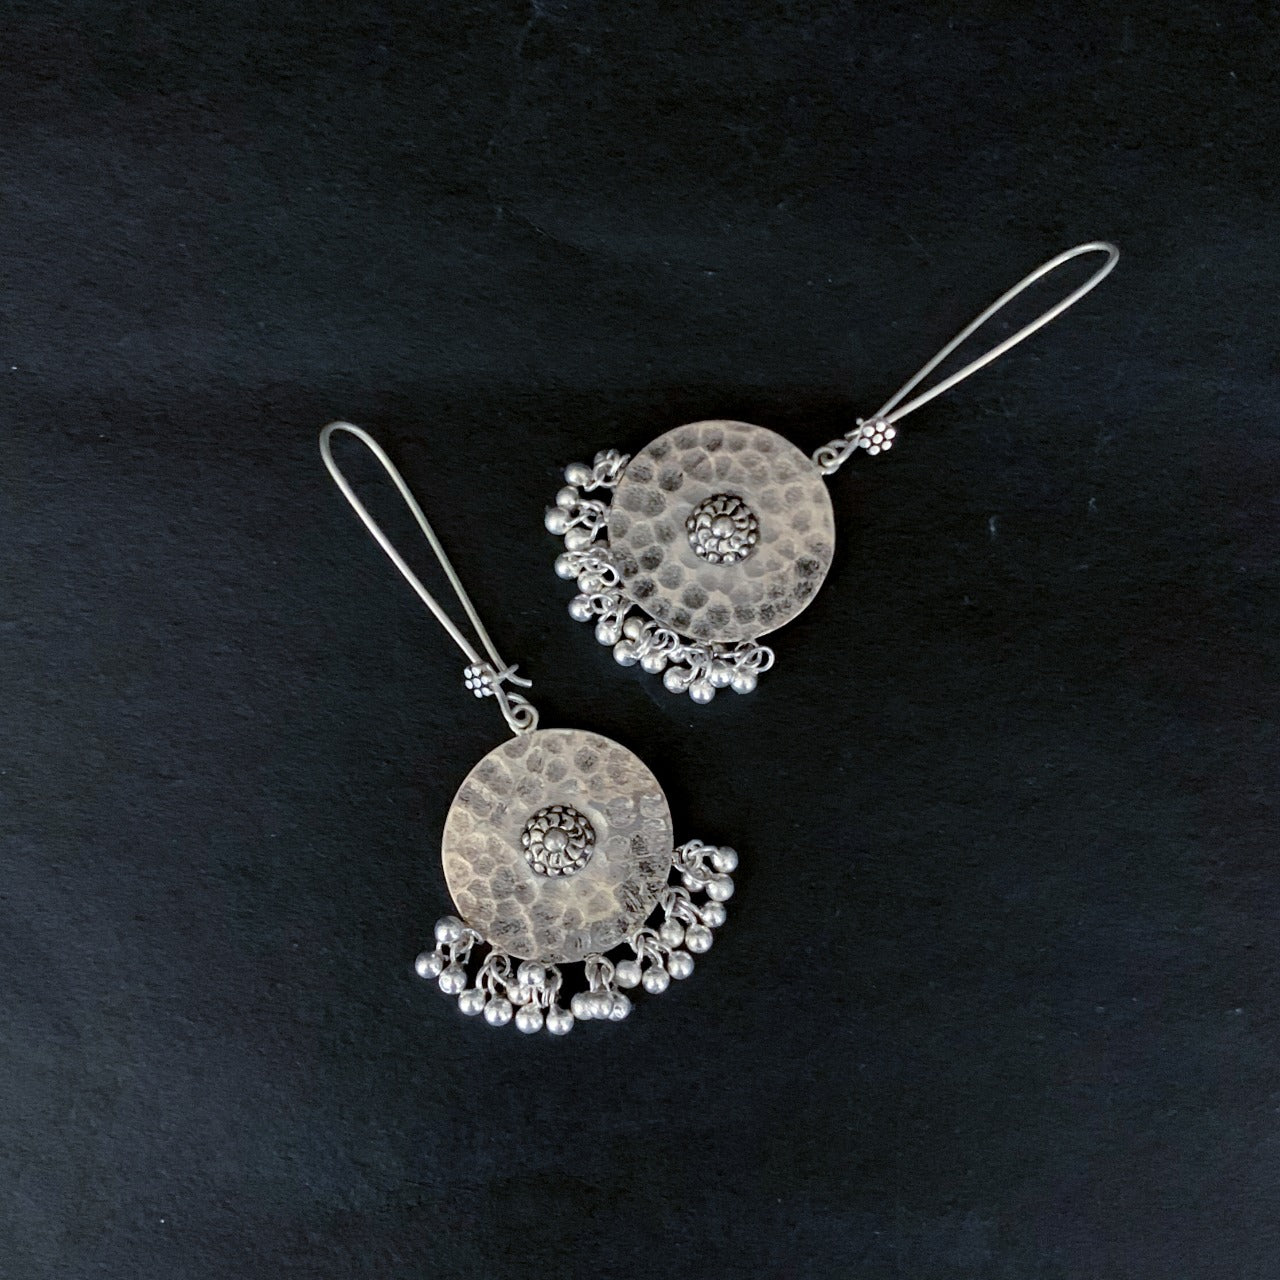 Beaten silver sleek hook earrings